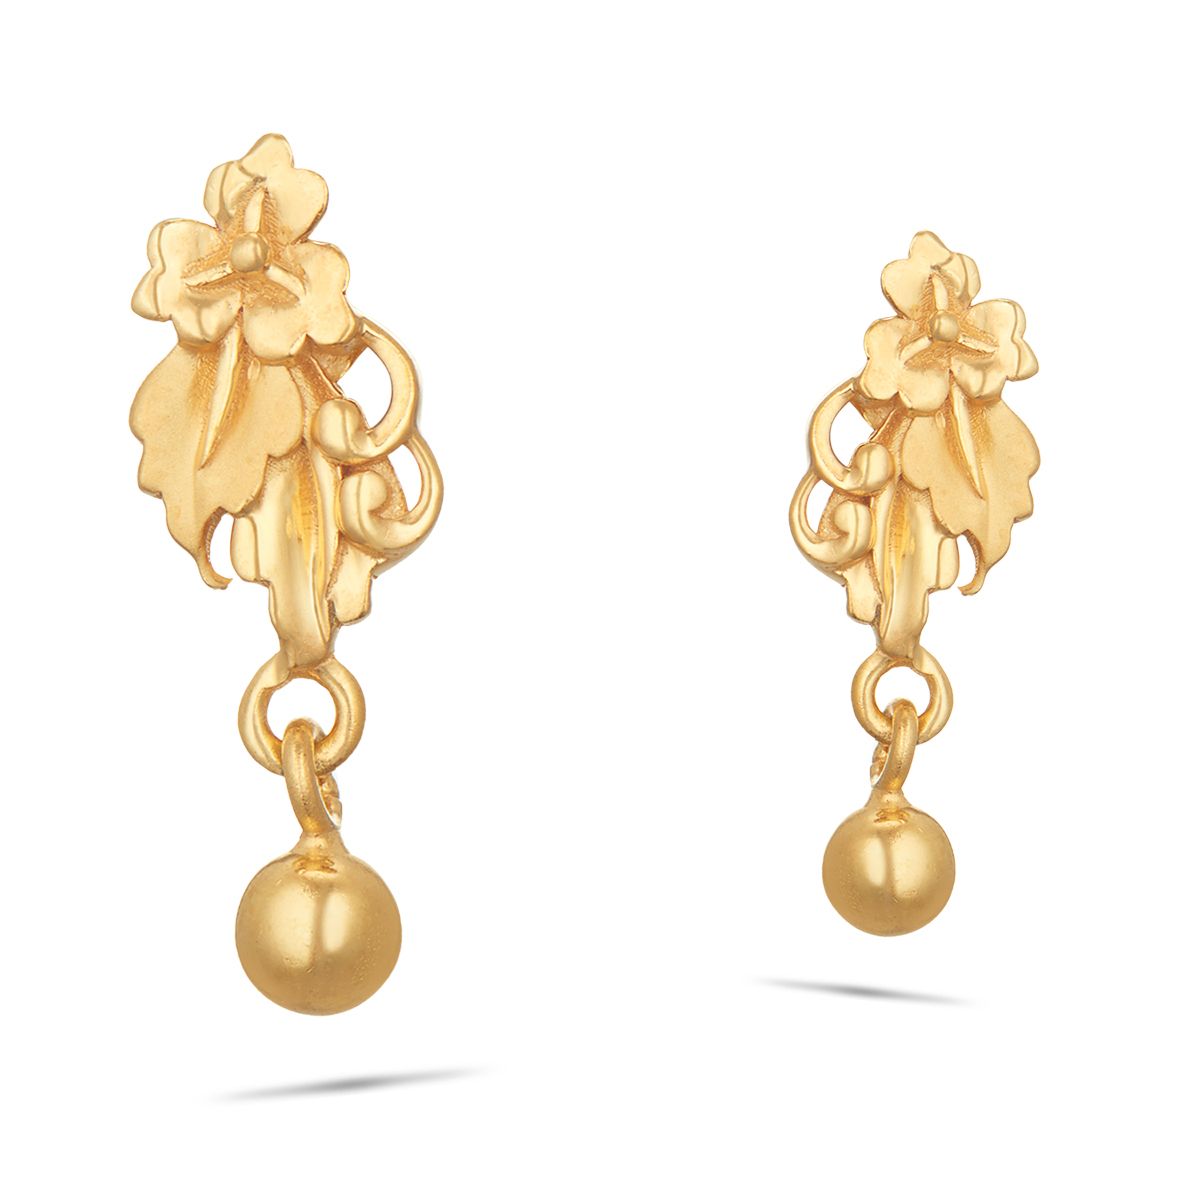 Latest Small Gold Earrings Designs | Buy 22k Gold Earrings - Kalyan